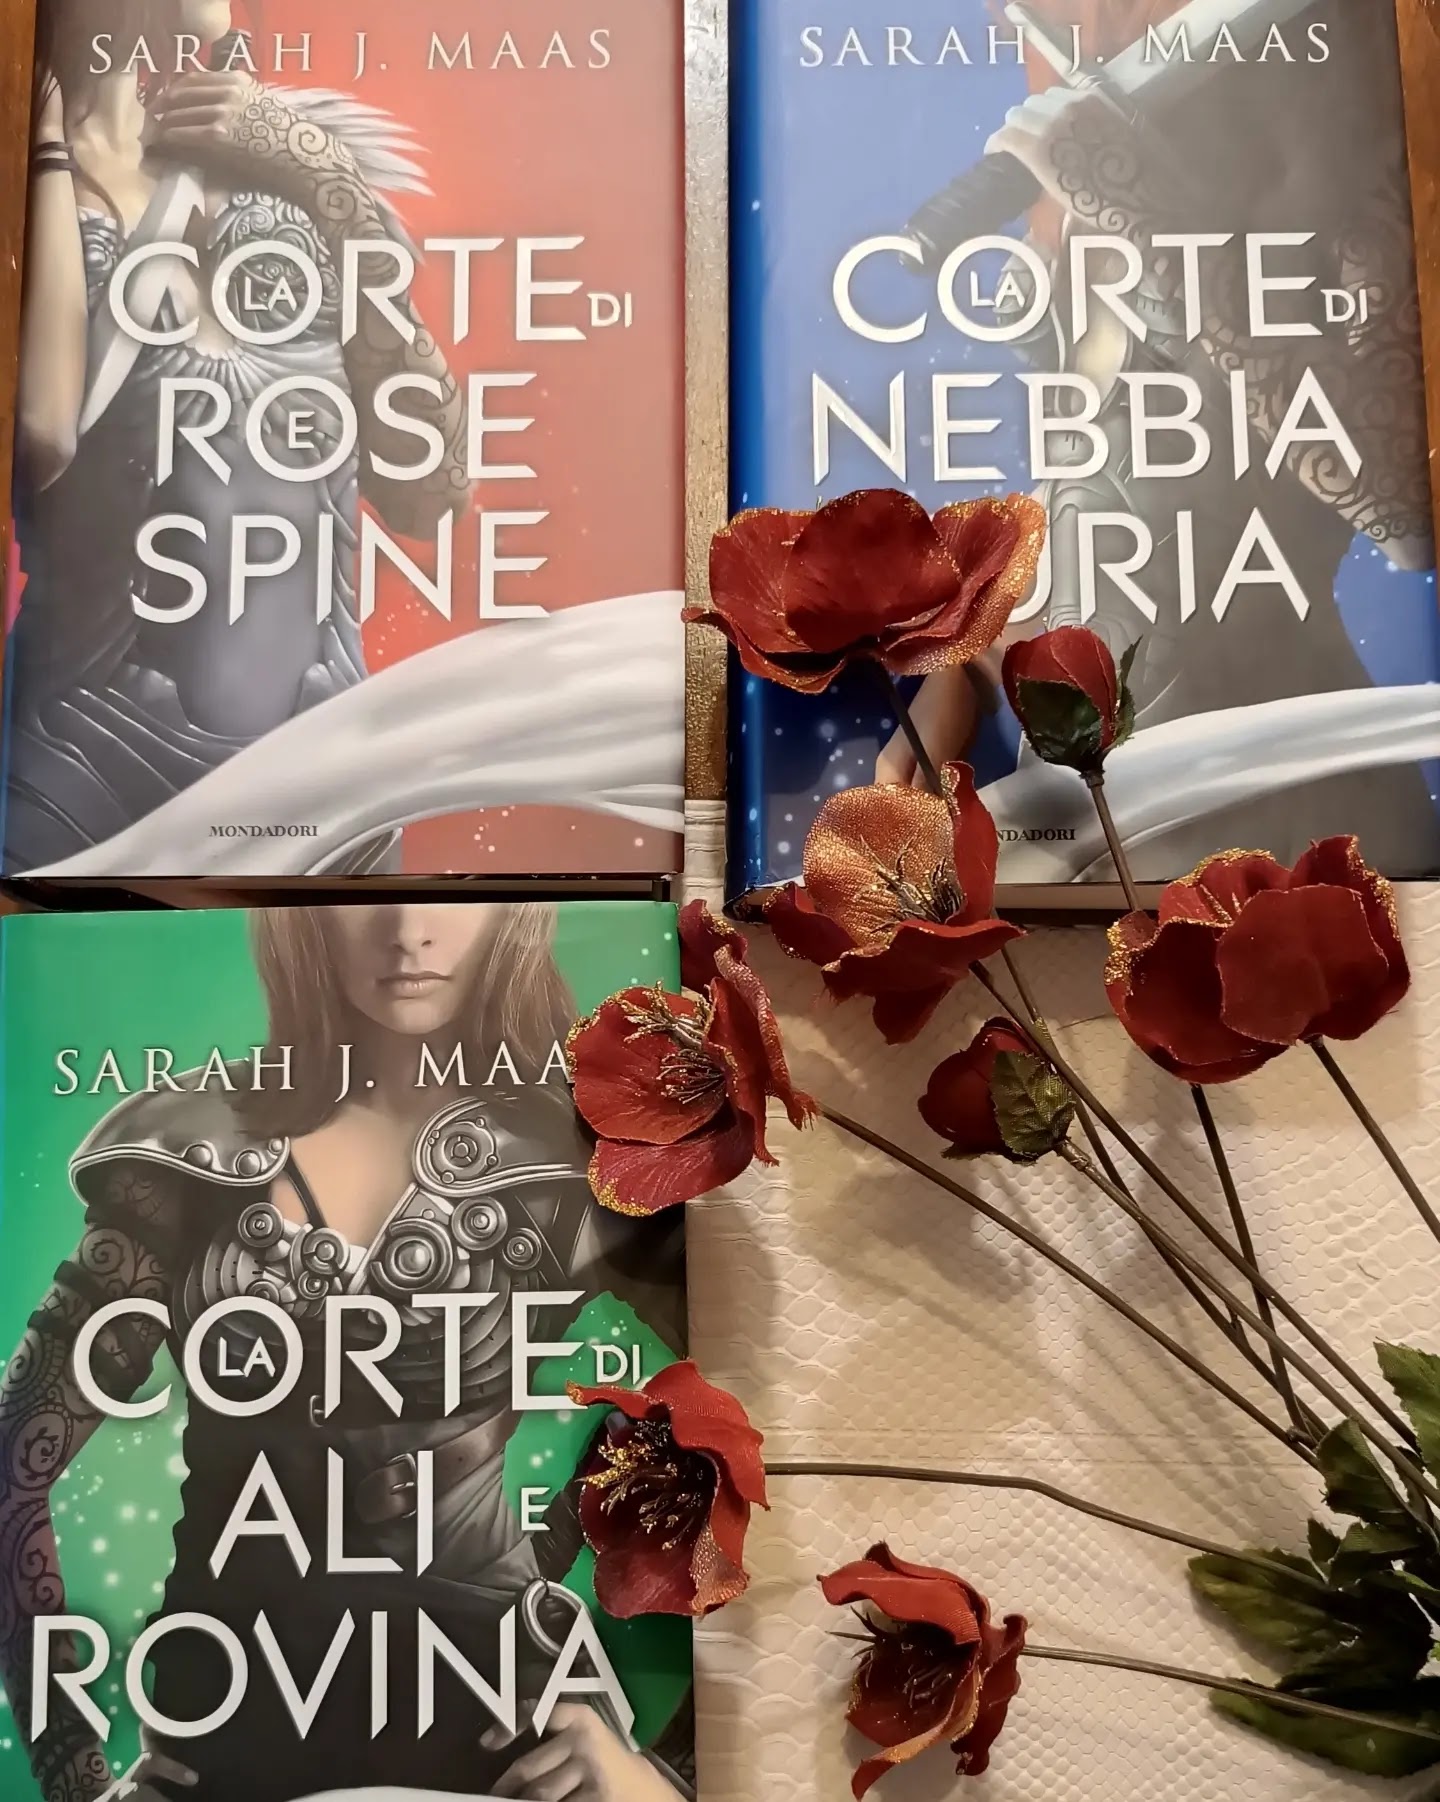 Happy Red Book Recensione "La corte di rose e spine" la trilogia completa di Sarah J. Maas